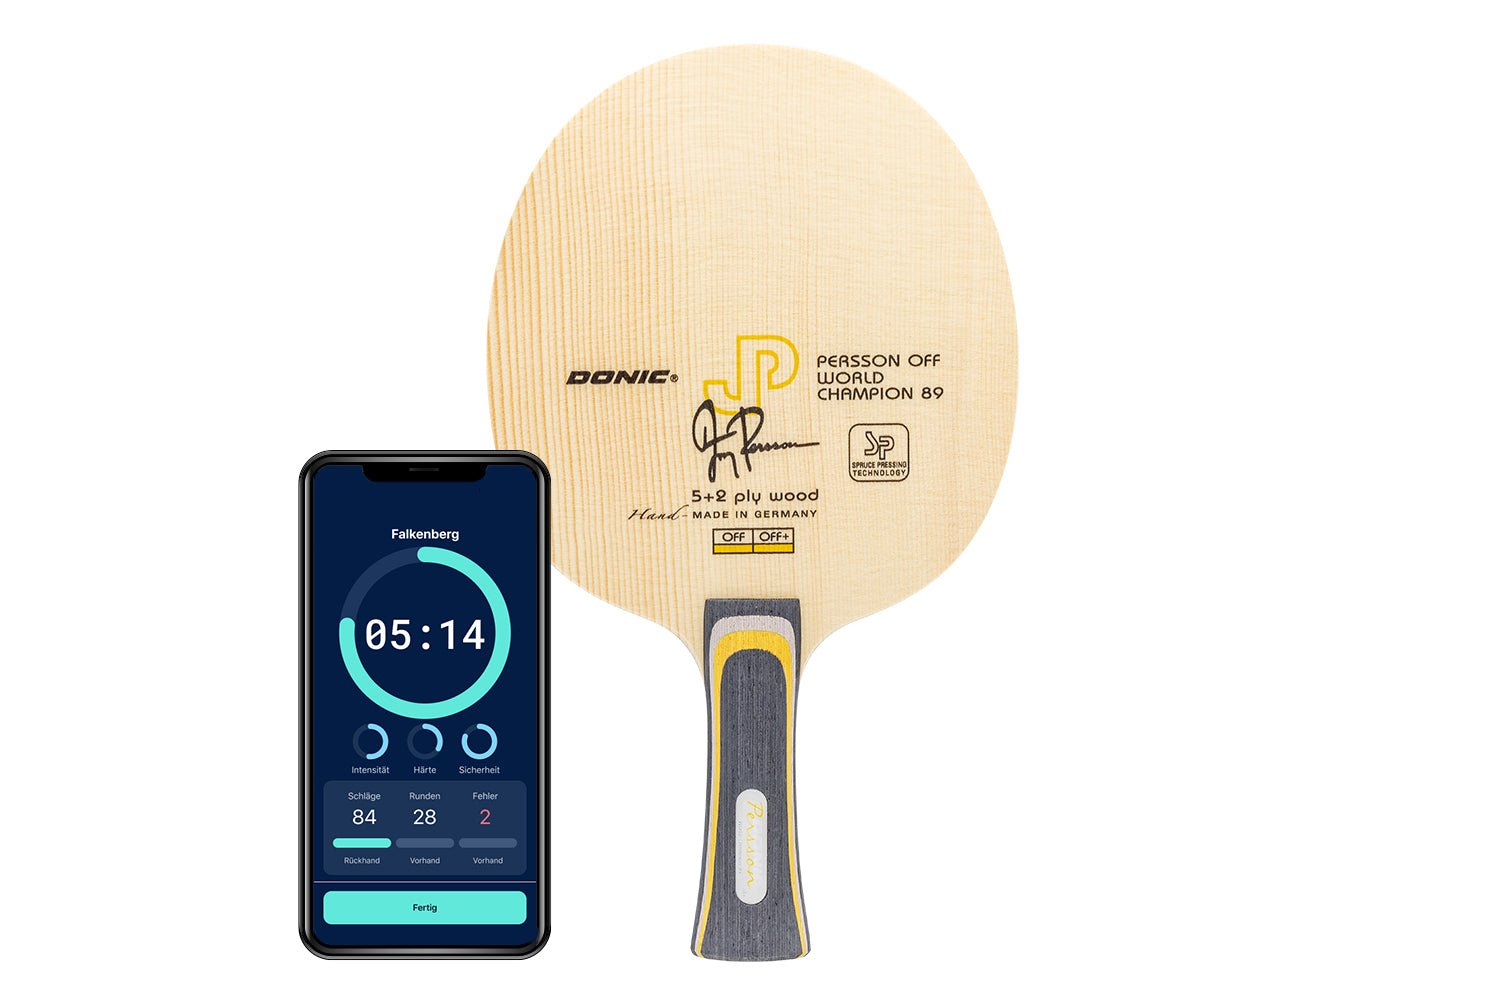 Donic Persson Off+ Weltmeister 89 Tischtennisschläger mit konkaven Griff und Smartphone zeigt Daten des Schlägers vor weißem Hintergrund